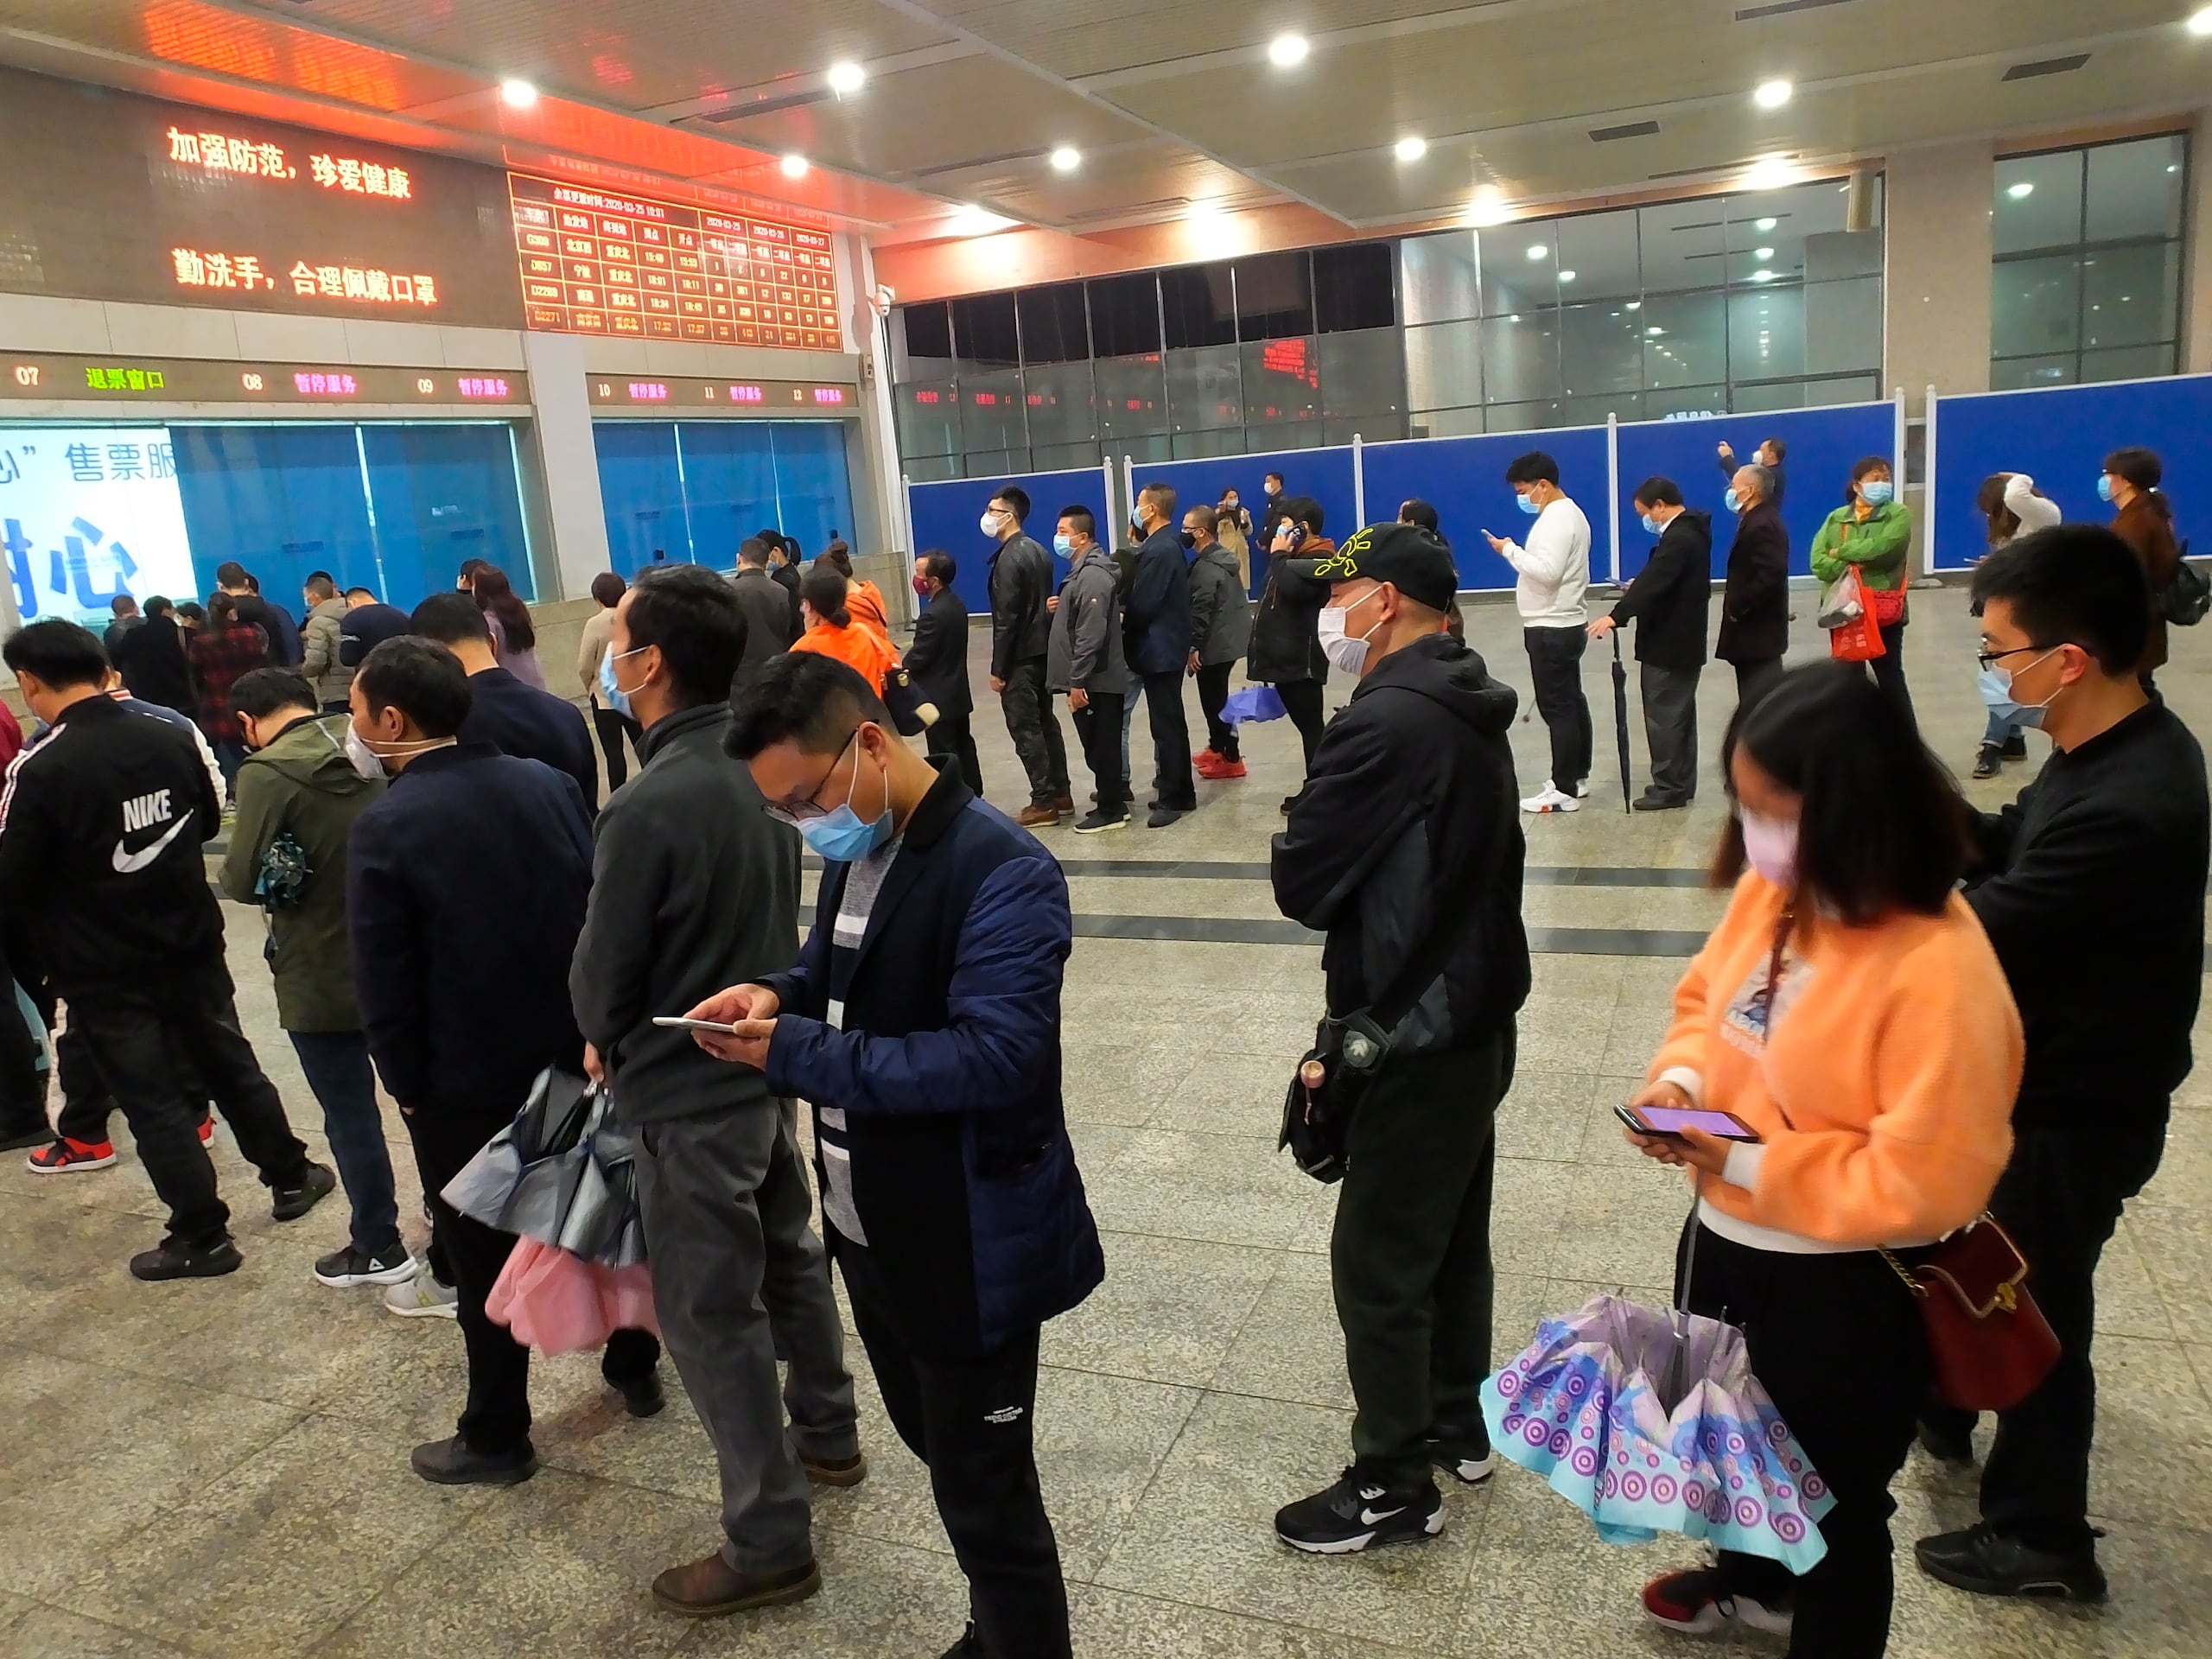 Más de 20,000 personas, entre trabajadores y estudiantes, aguardan en Hubei a su turno para regresar a la capital, según la agencia estatal Xinhua.